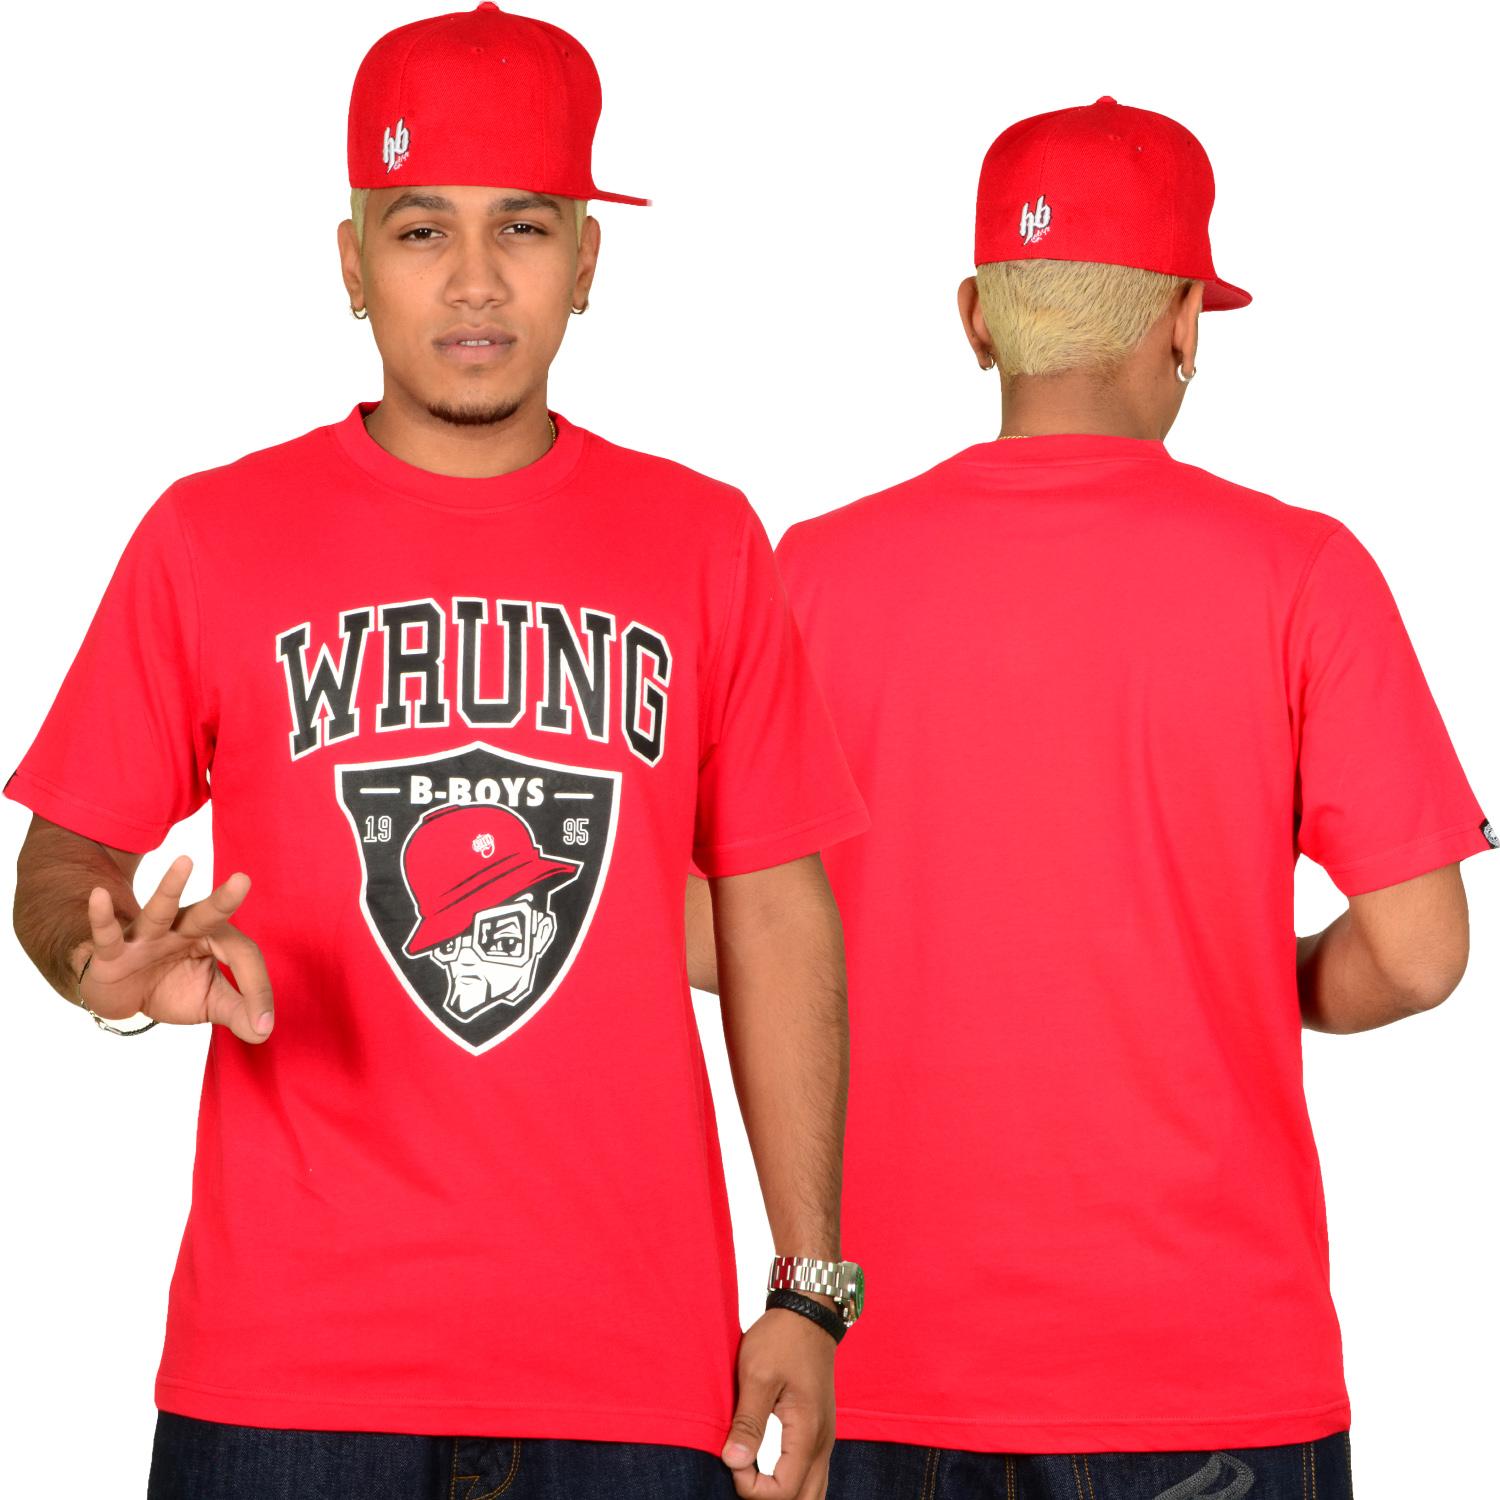 Foto Wrung Division True B-boys Hombres T-shirt Rojo